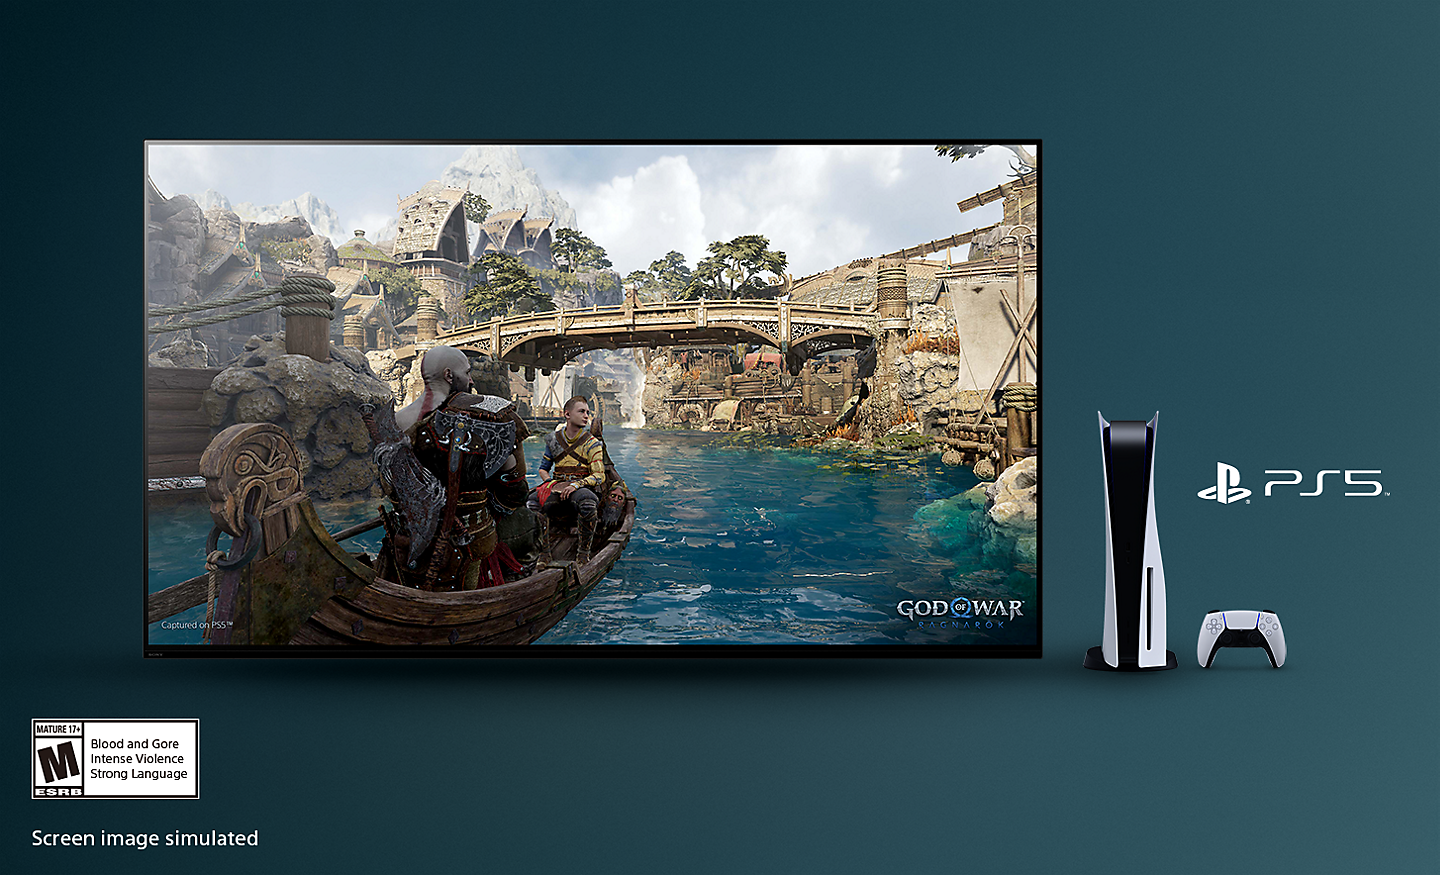 Televisión BRAVIA con captura de pantalla de God of War: Ragnarok muestra un barco en un río y un puente de fondo con la consola PS5™, el controlador y el logotipo de PS5™ a la derecha de la televisión